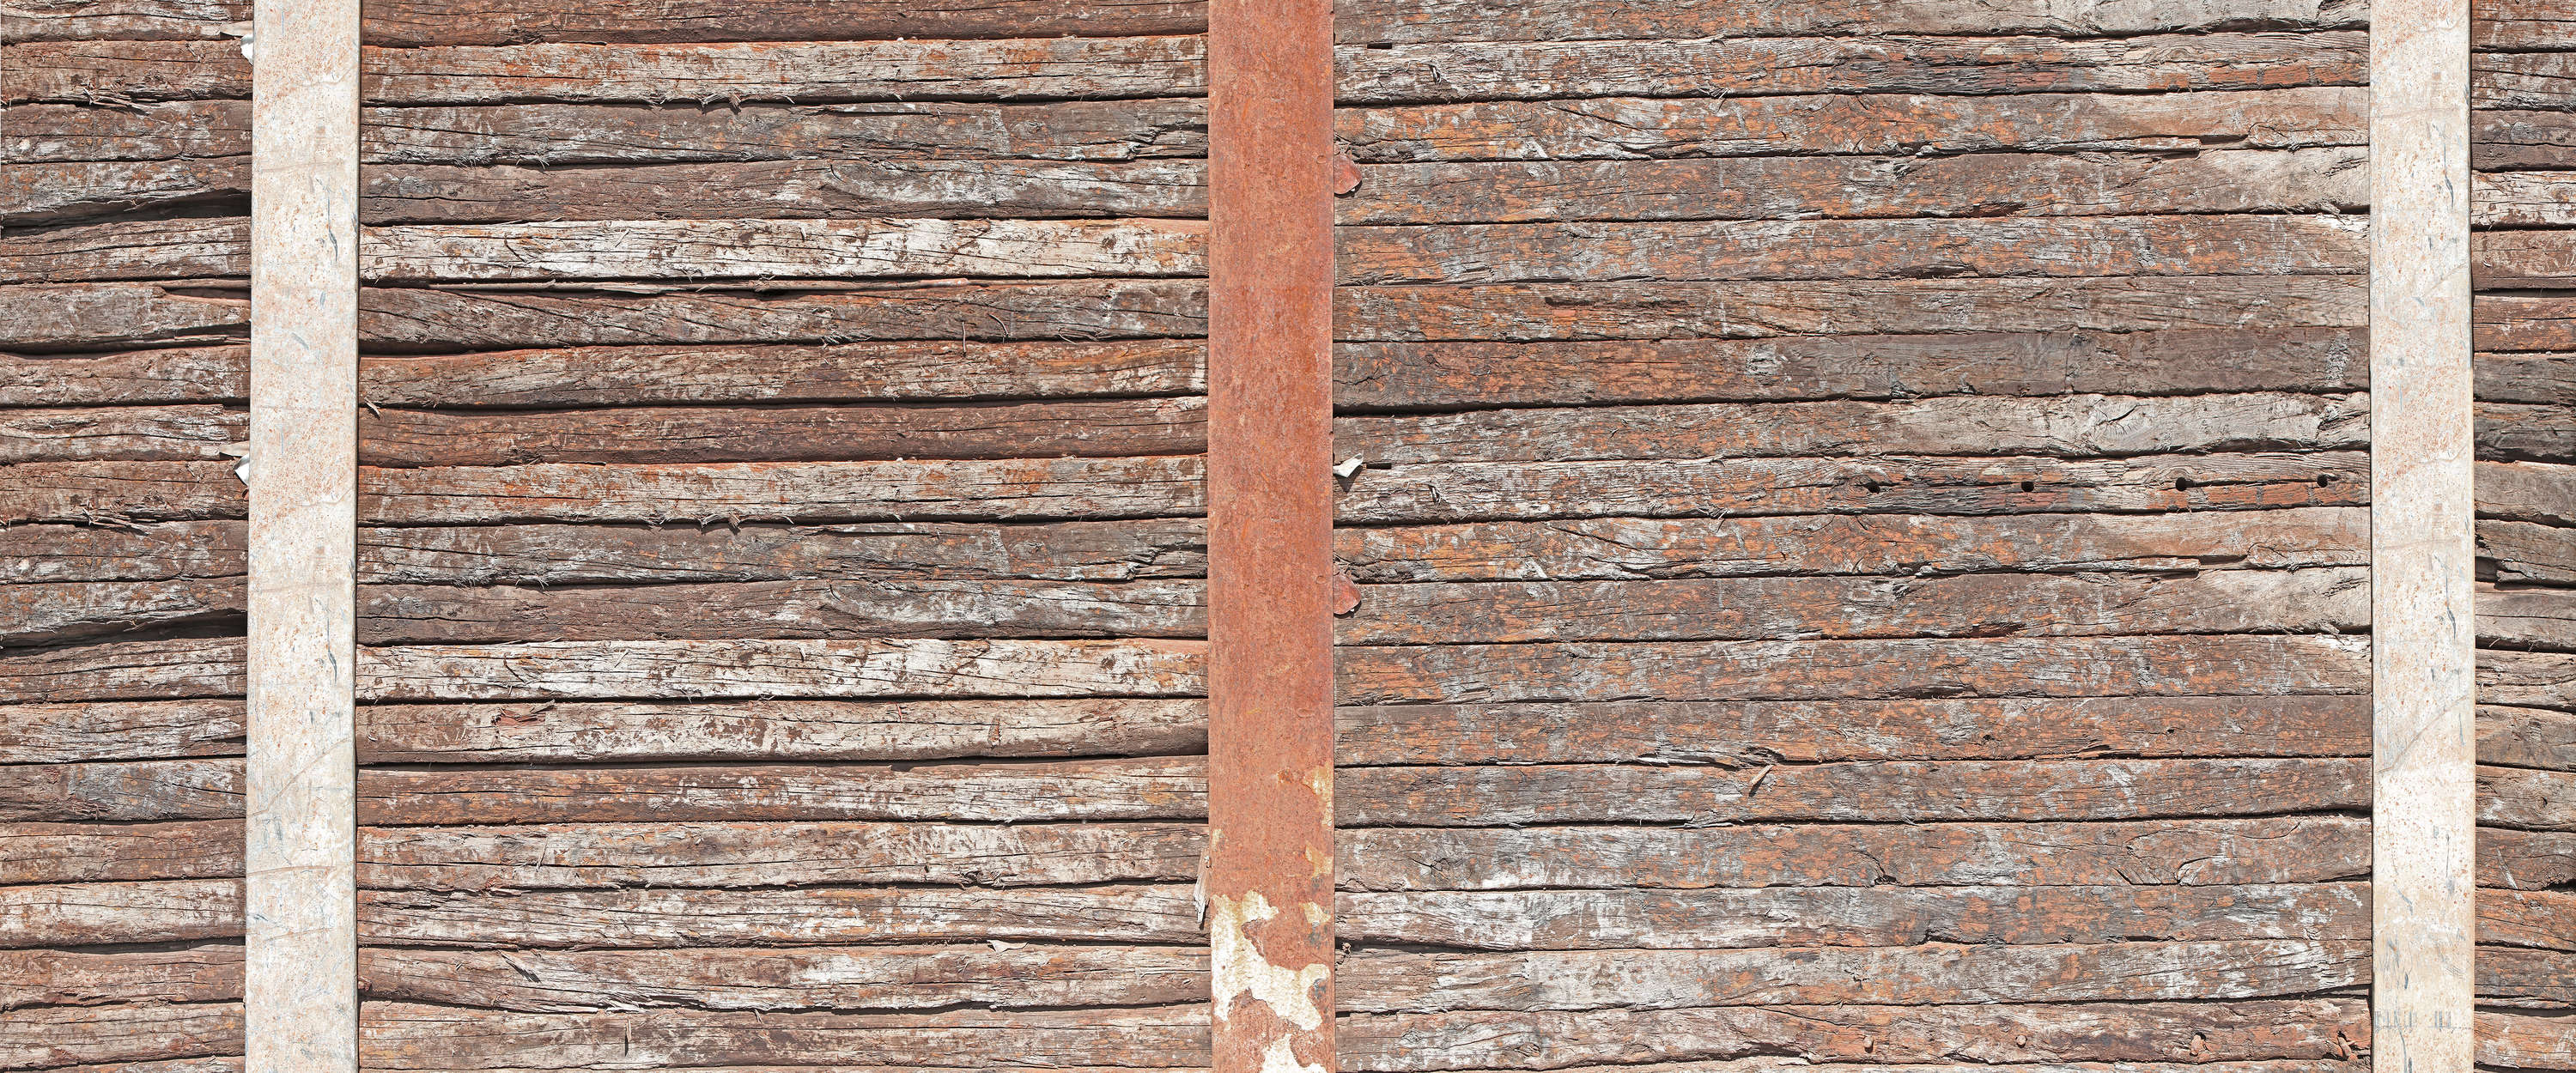             Papier peint panoramique vieux mur en bois entre des poutres en acier rouillé
        